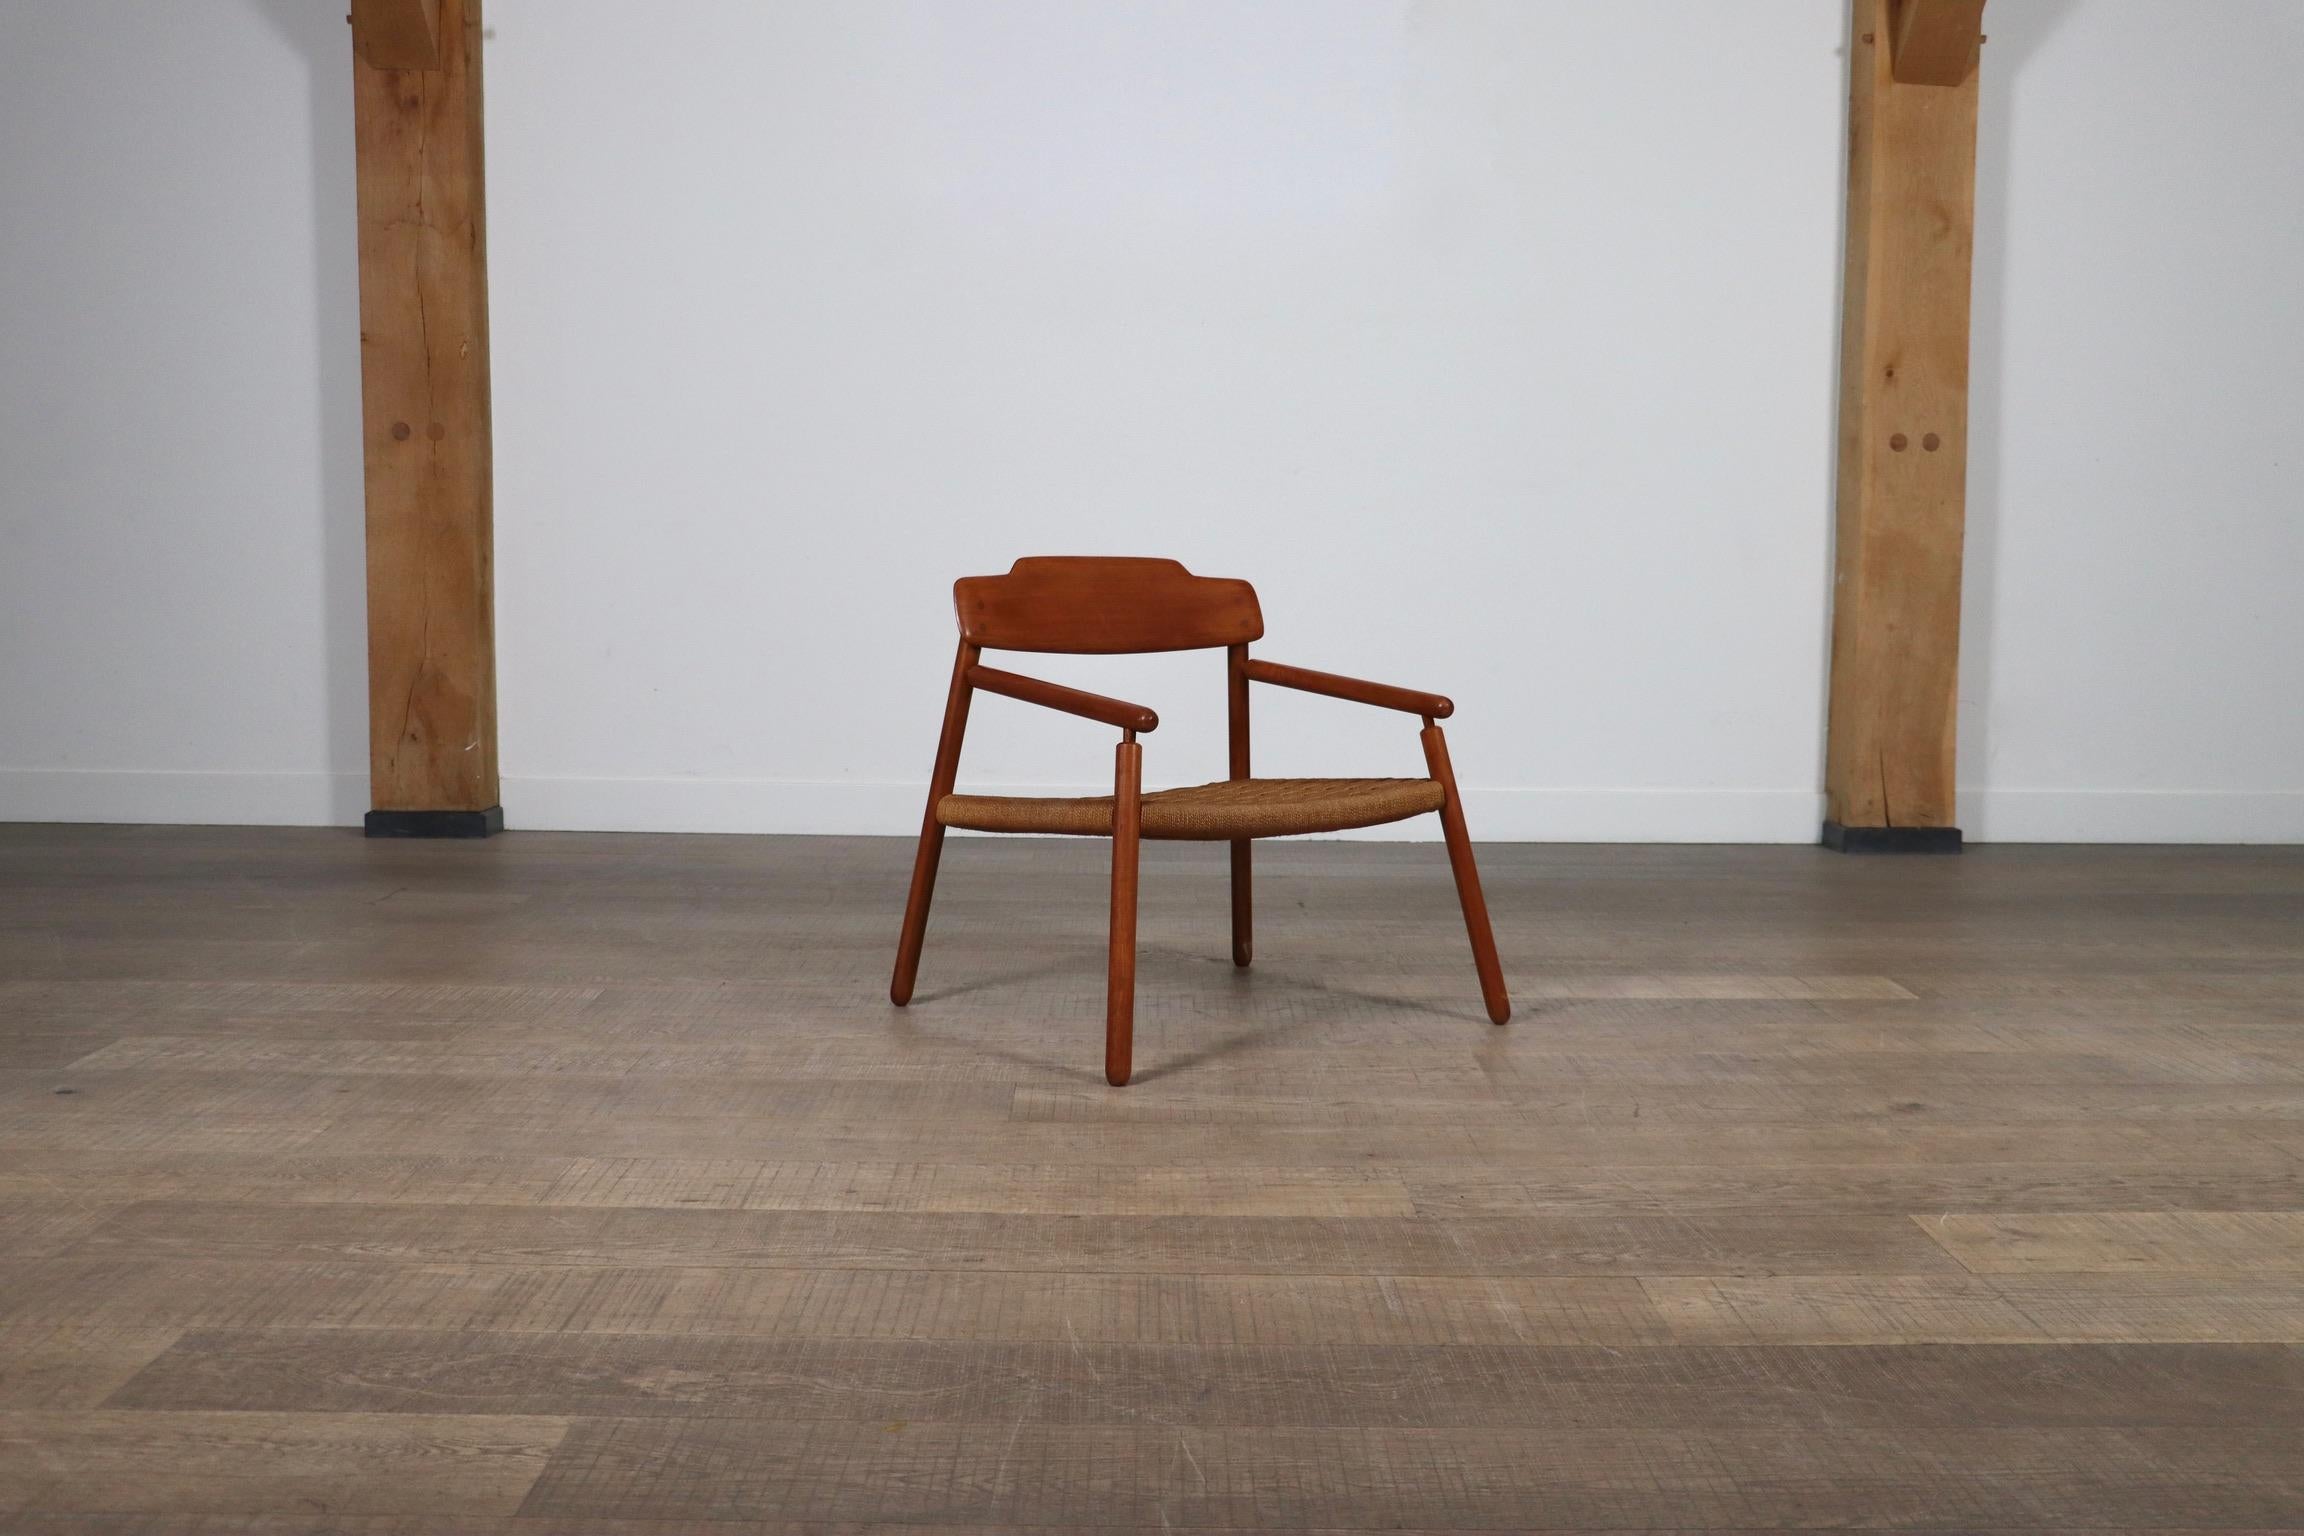 Joli fauteuil minimaliste du milieu du siècle dernier en chêne et cordon de papier tressé, fabriqué en Finlande dans les années 1950. Ce modèle aéré est réalisé avec un grand souci du détail. Les raccords en bois, ou joints, du cadre sont tous